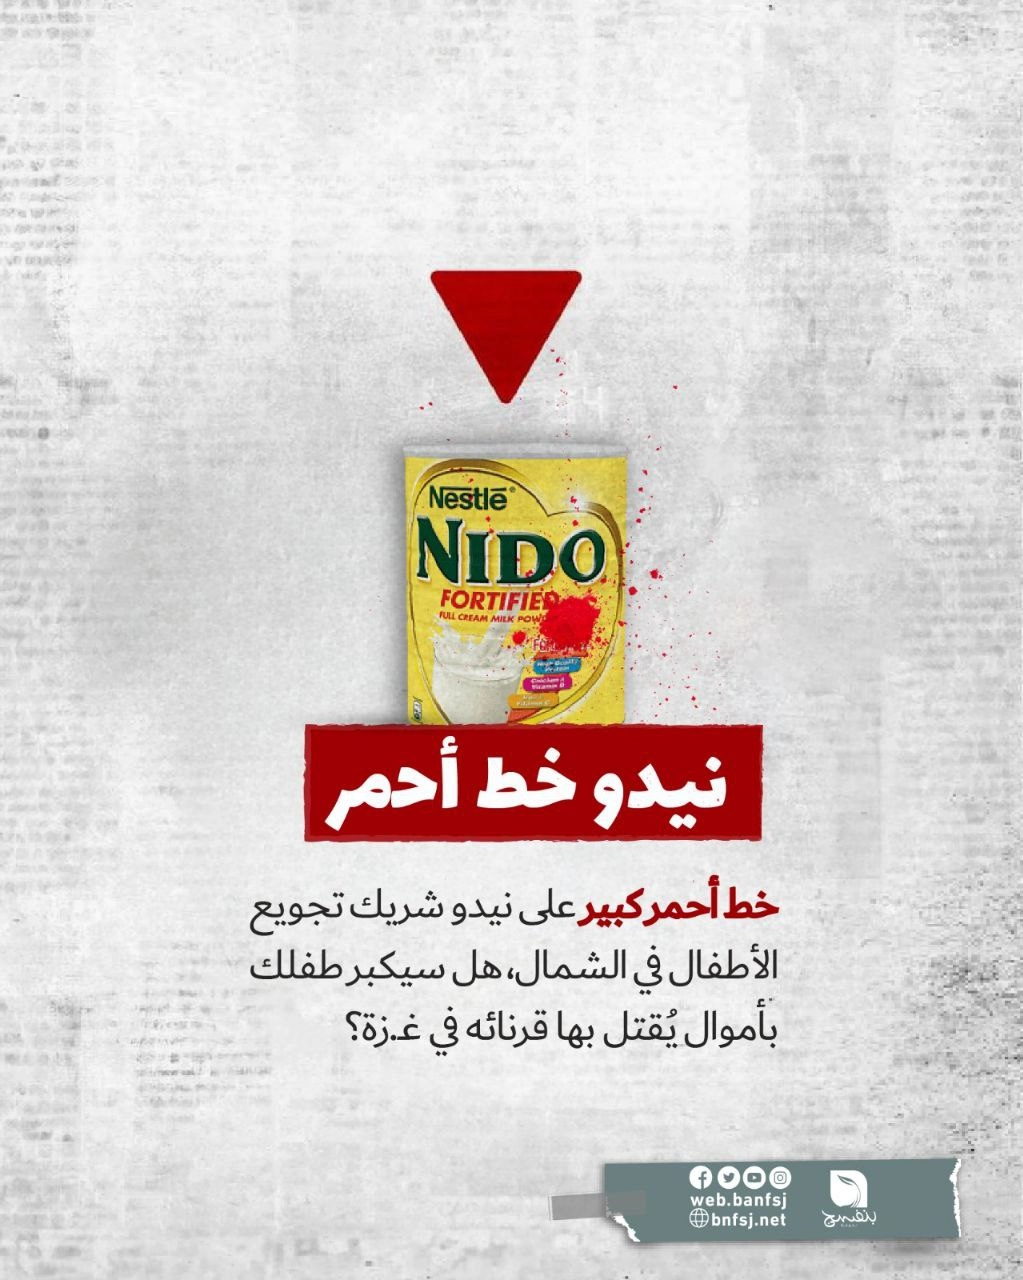 حليب نيديو من منتجات شركة نستلة الداعمة للاحتلال الإسرائيلي.jpg